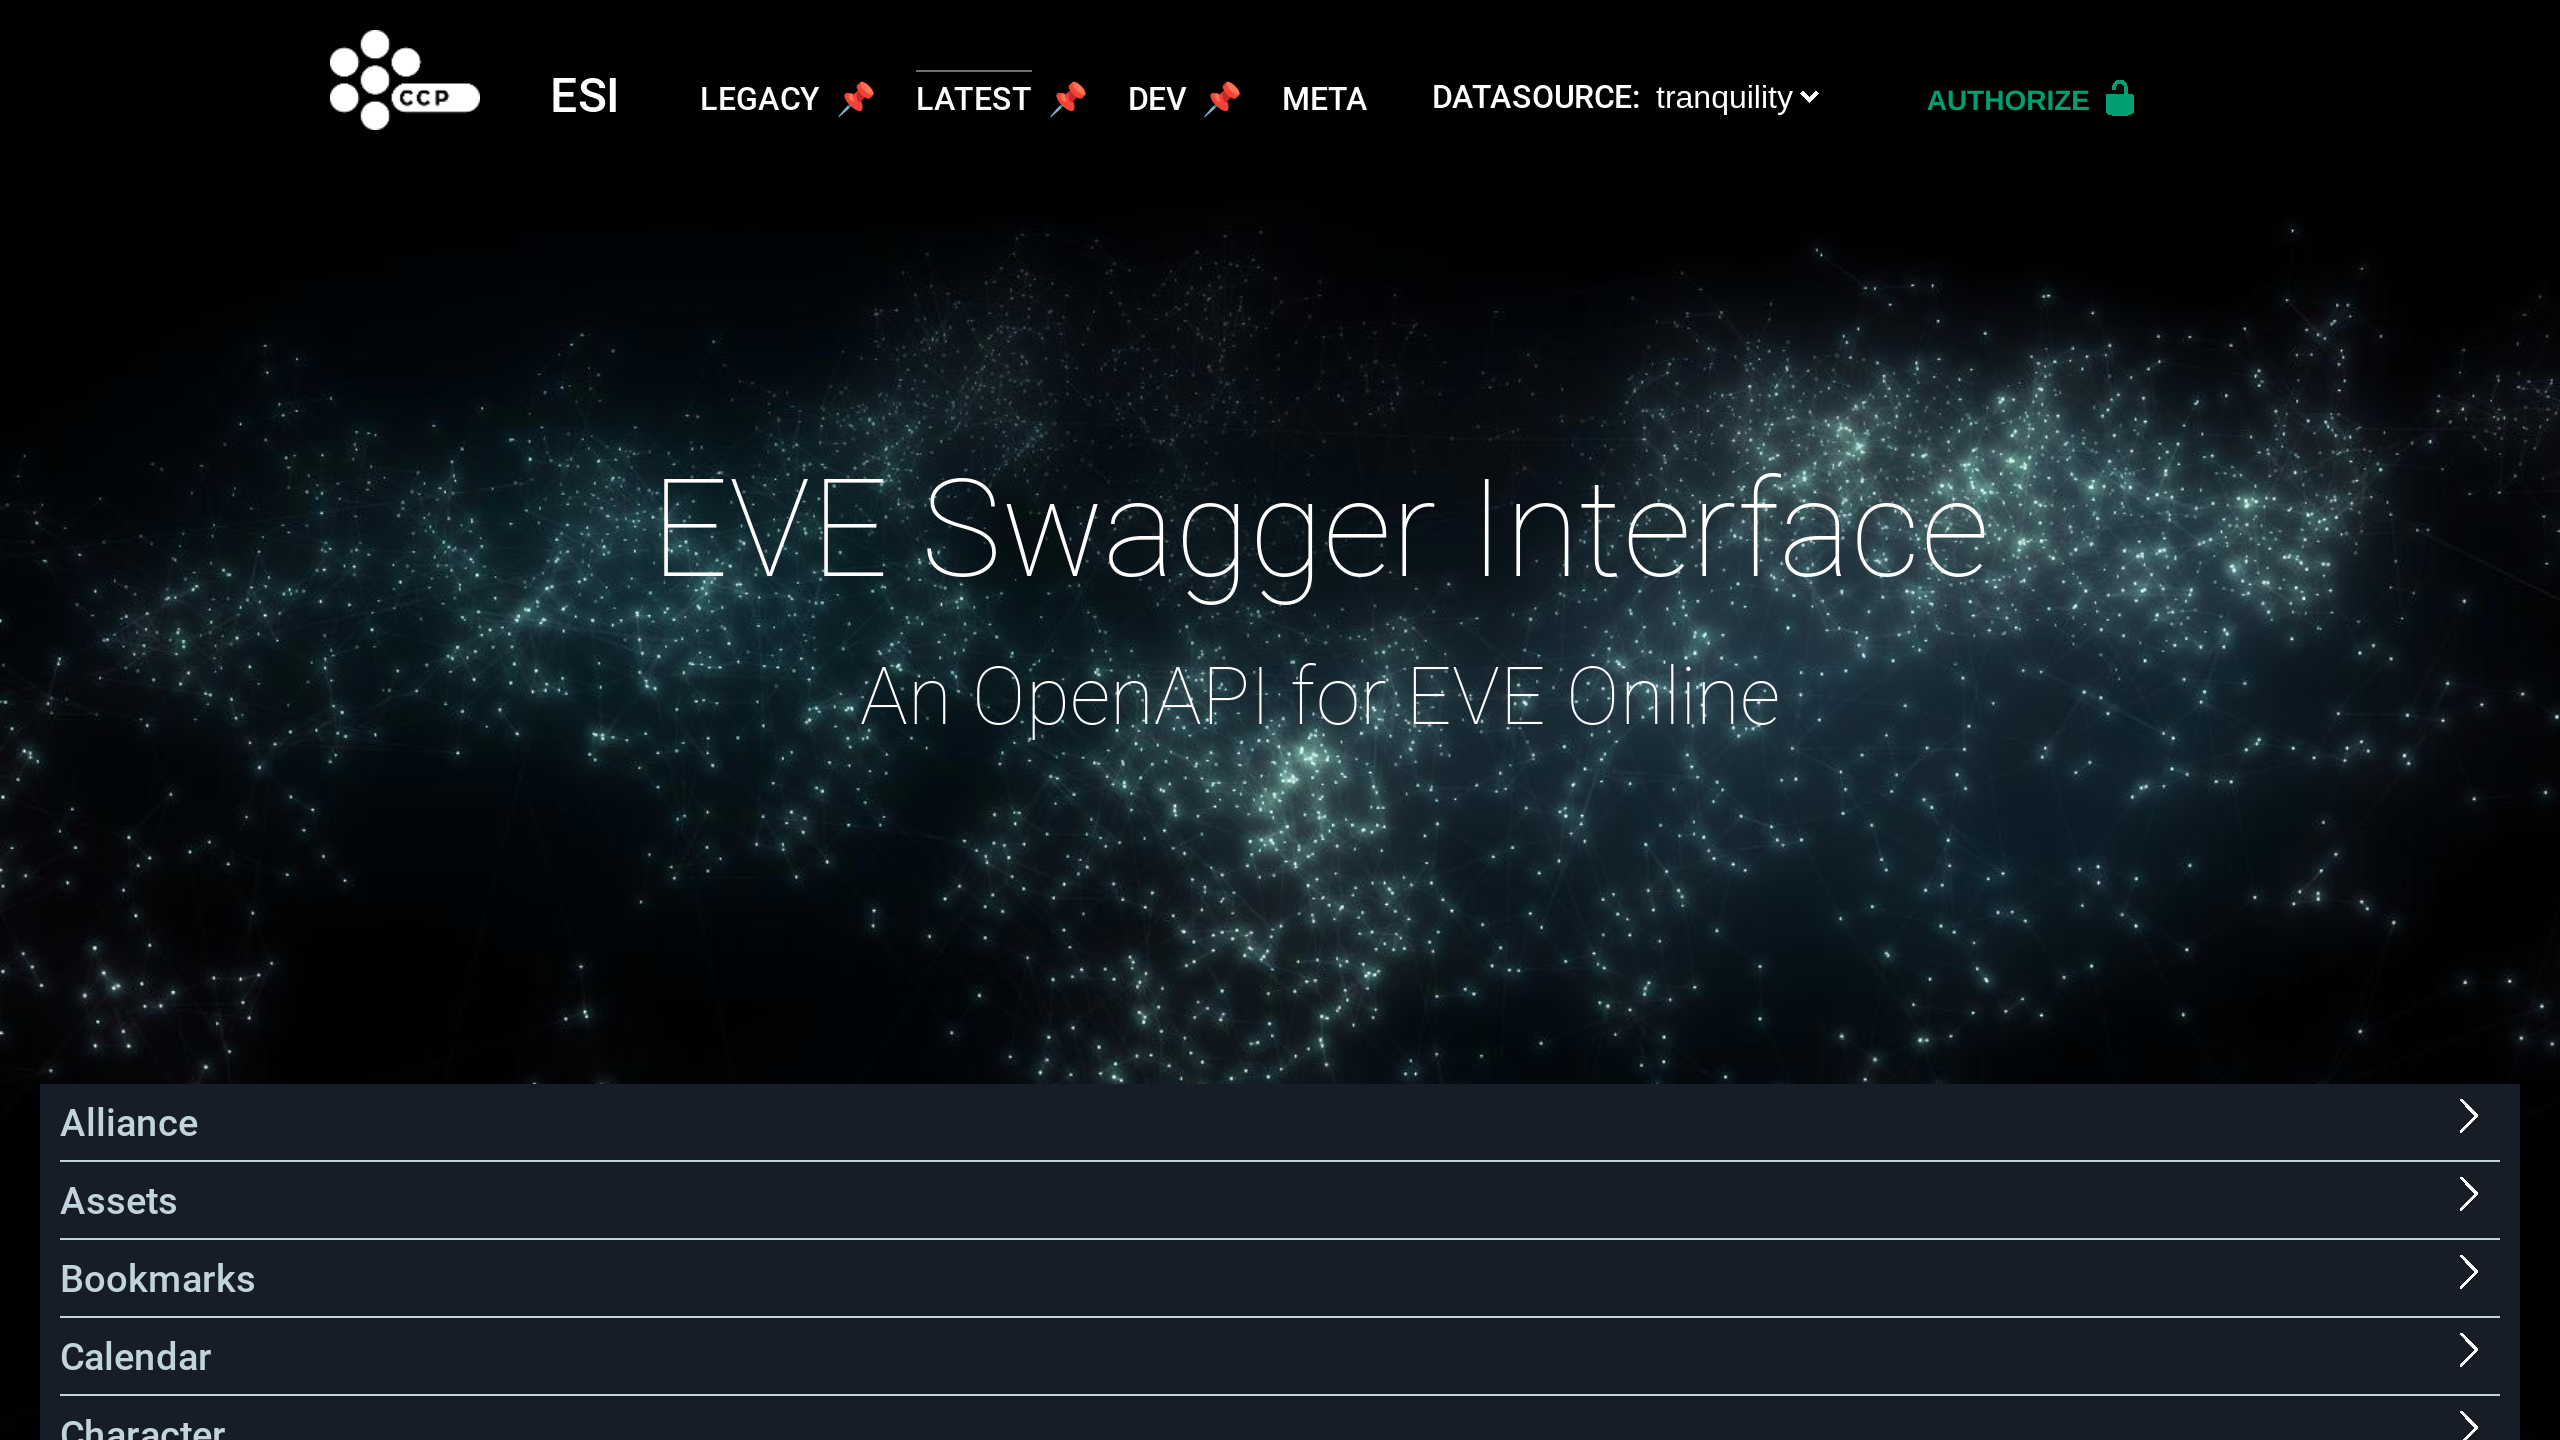 Eve Online's website screenshot